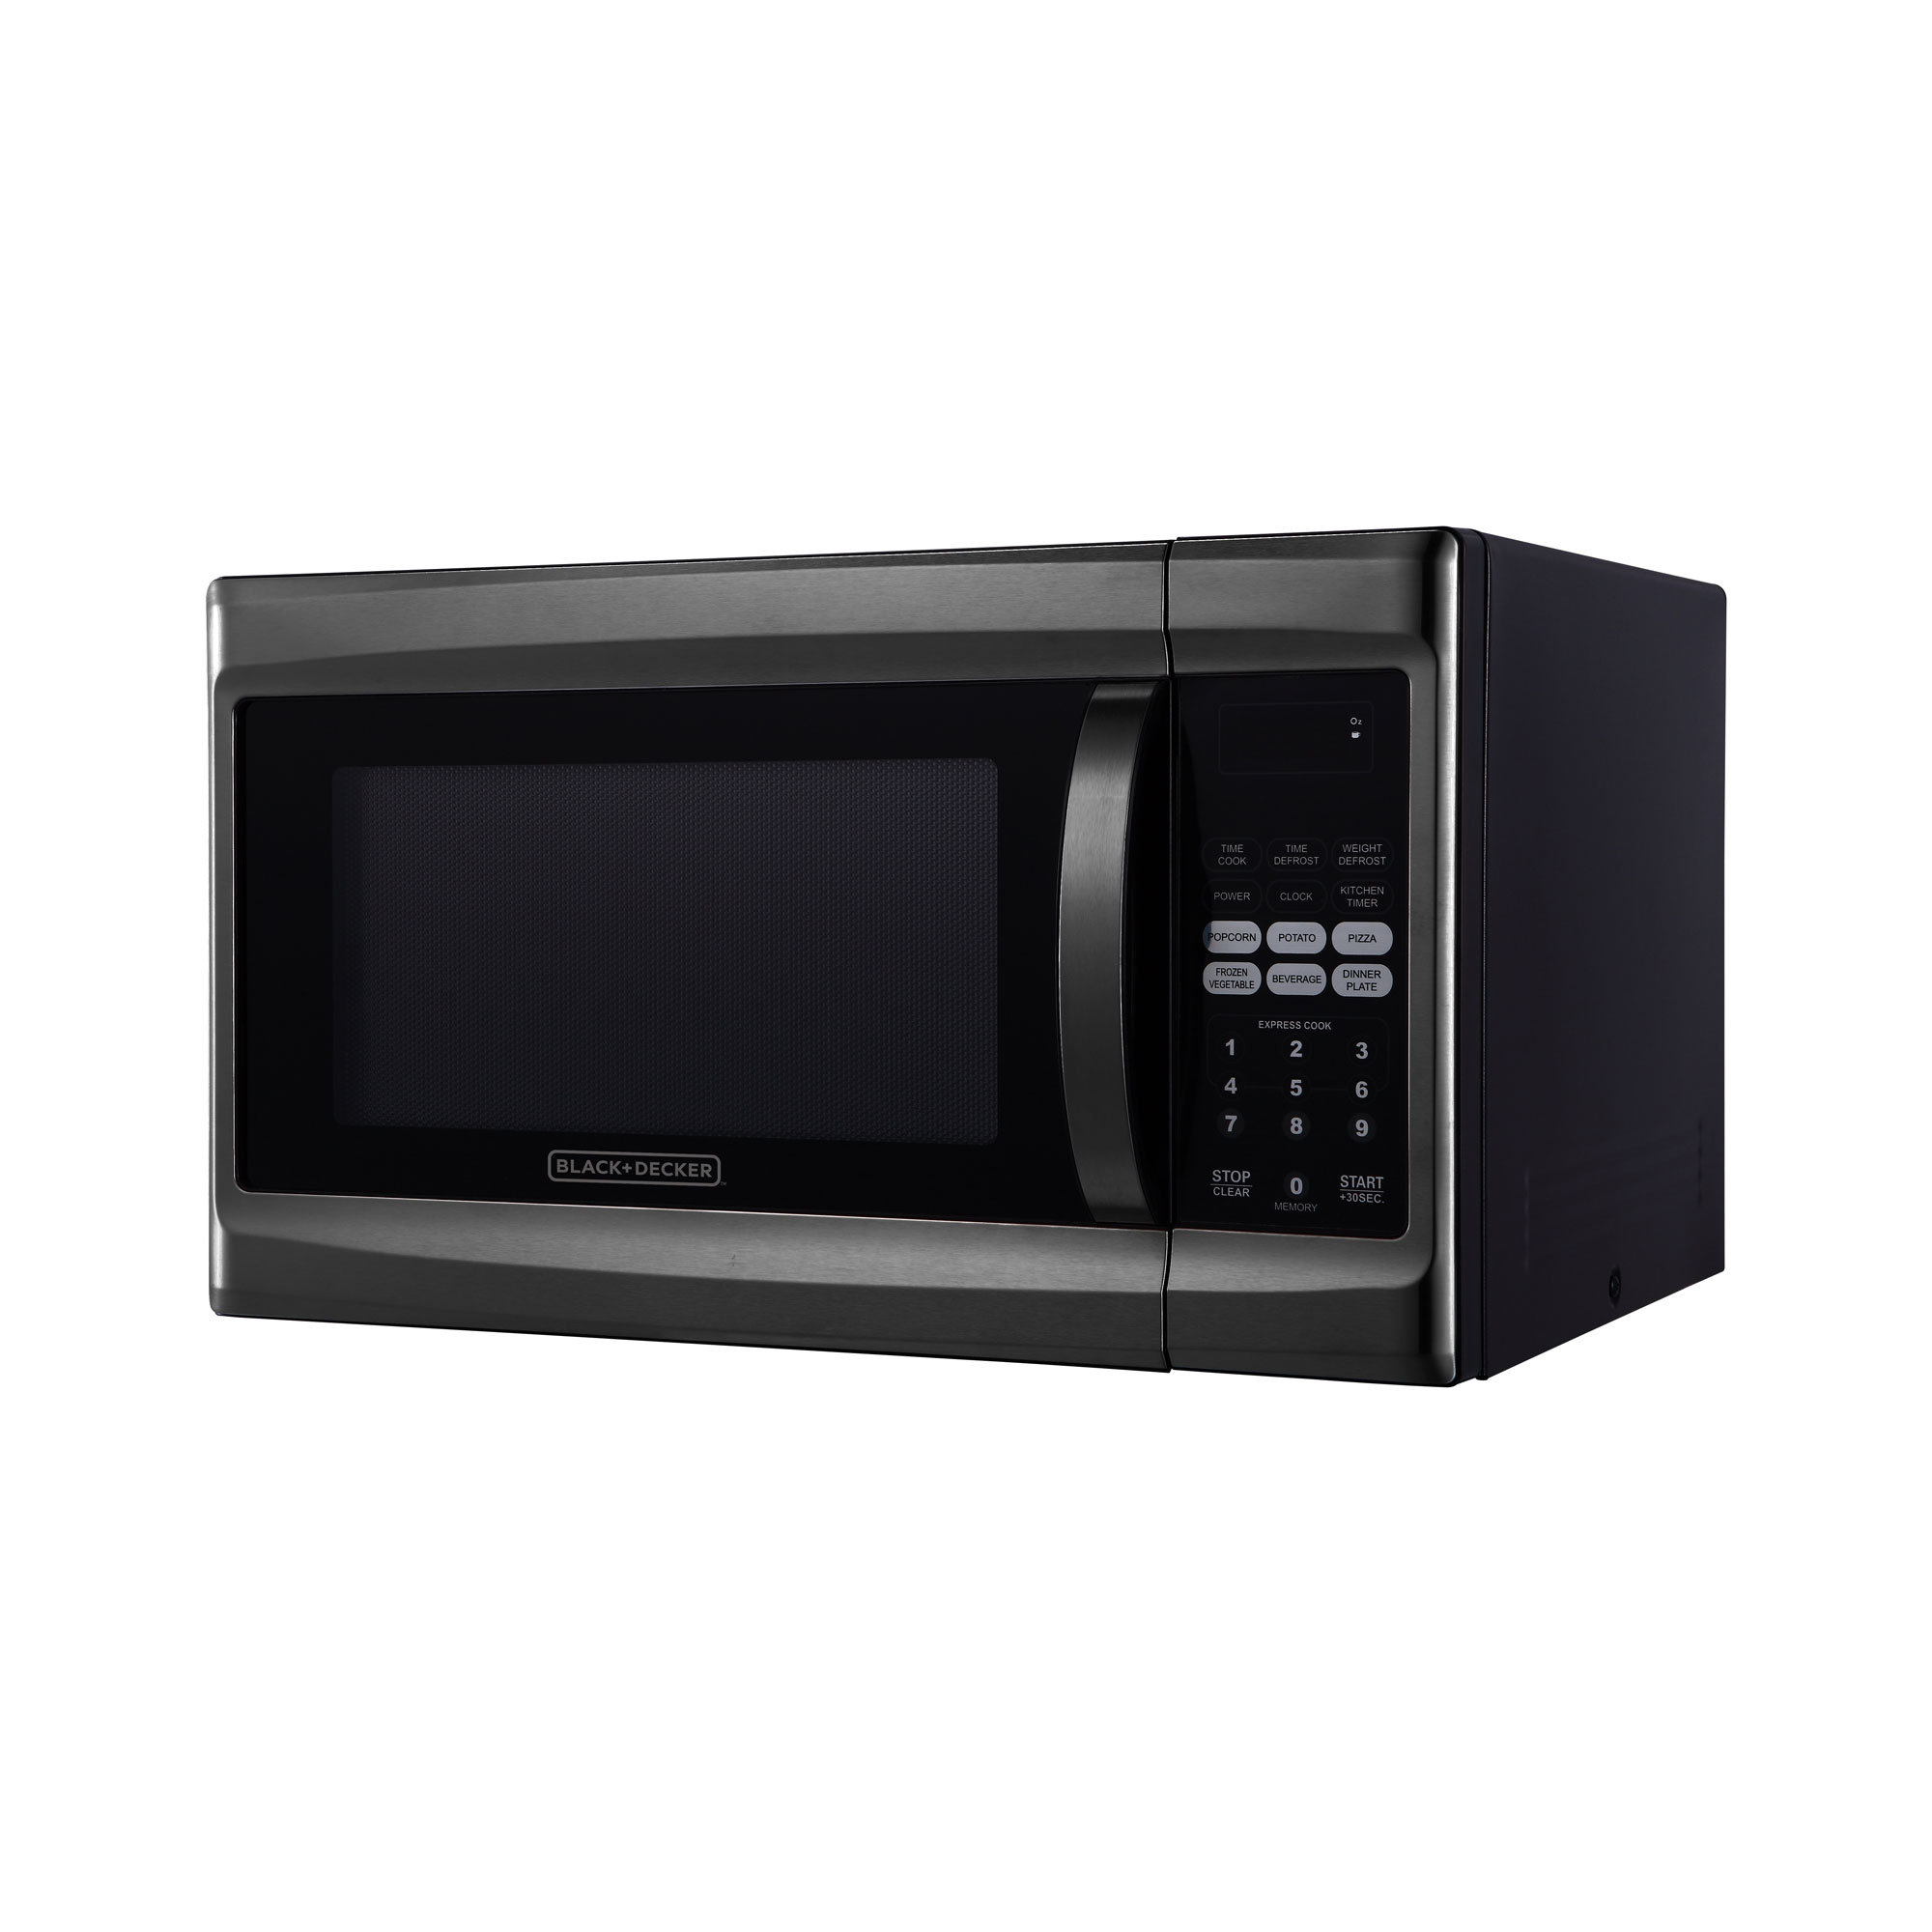 https://assets.wfcdn.com/im/84363633/compr-r85/2230/223012032/blackdecker-1000-watt-13-cubic-feet-microwave-oven-black-stainless-steel.jpg